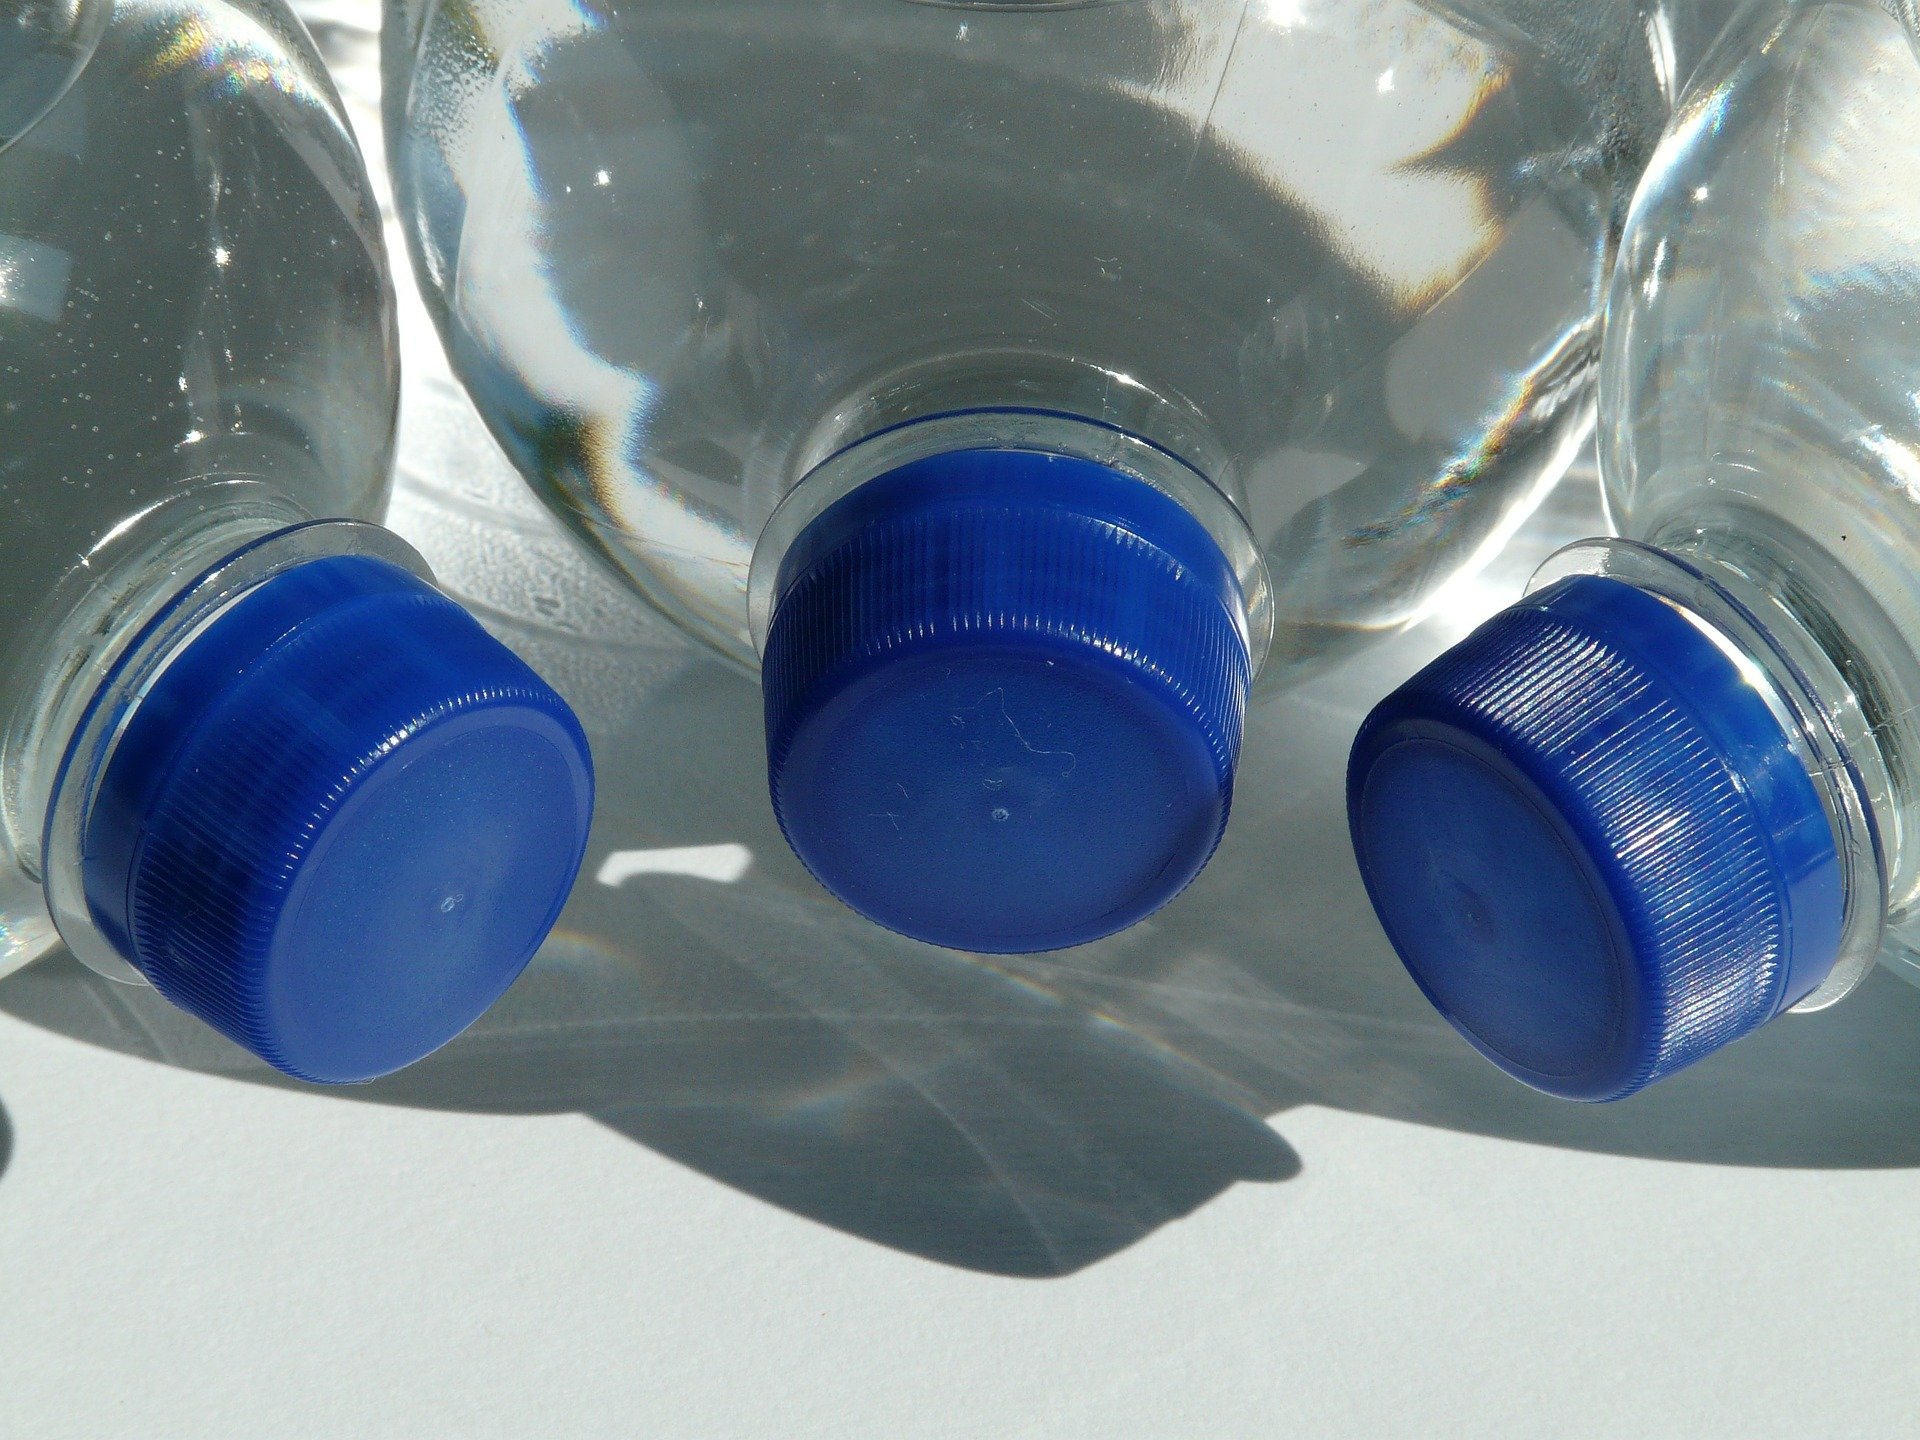 Els aeroports hauran de vendre ampolles d'aigua a 1 euro